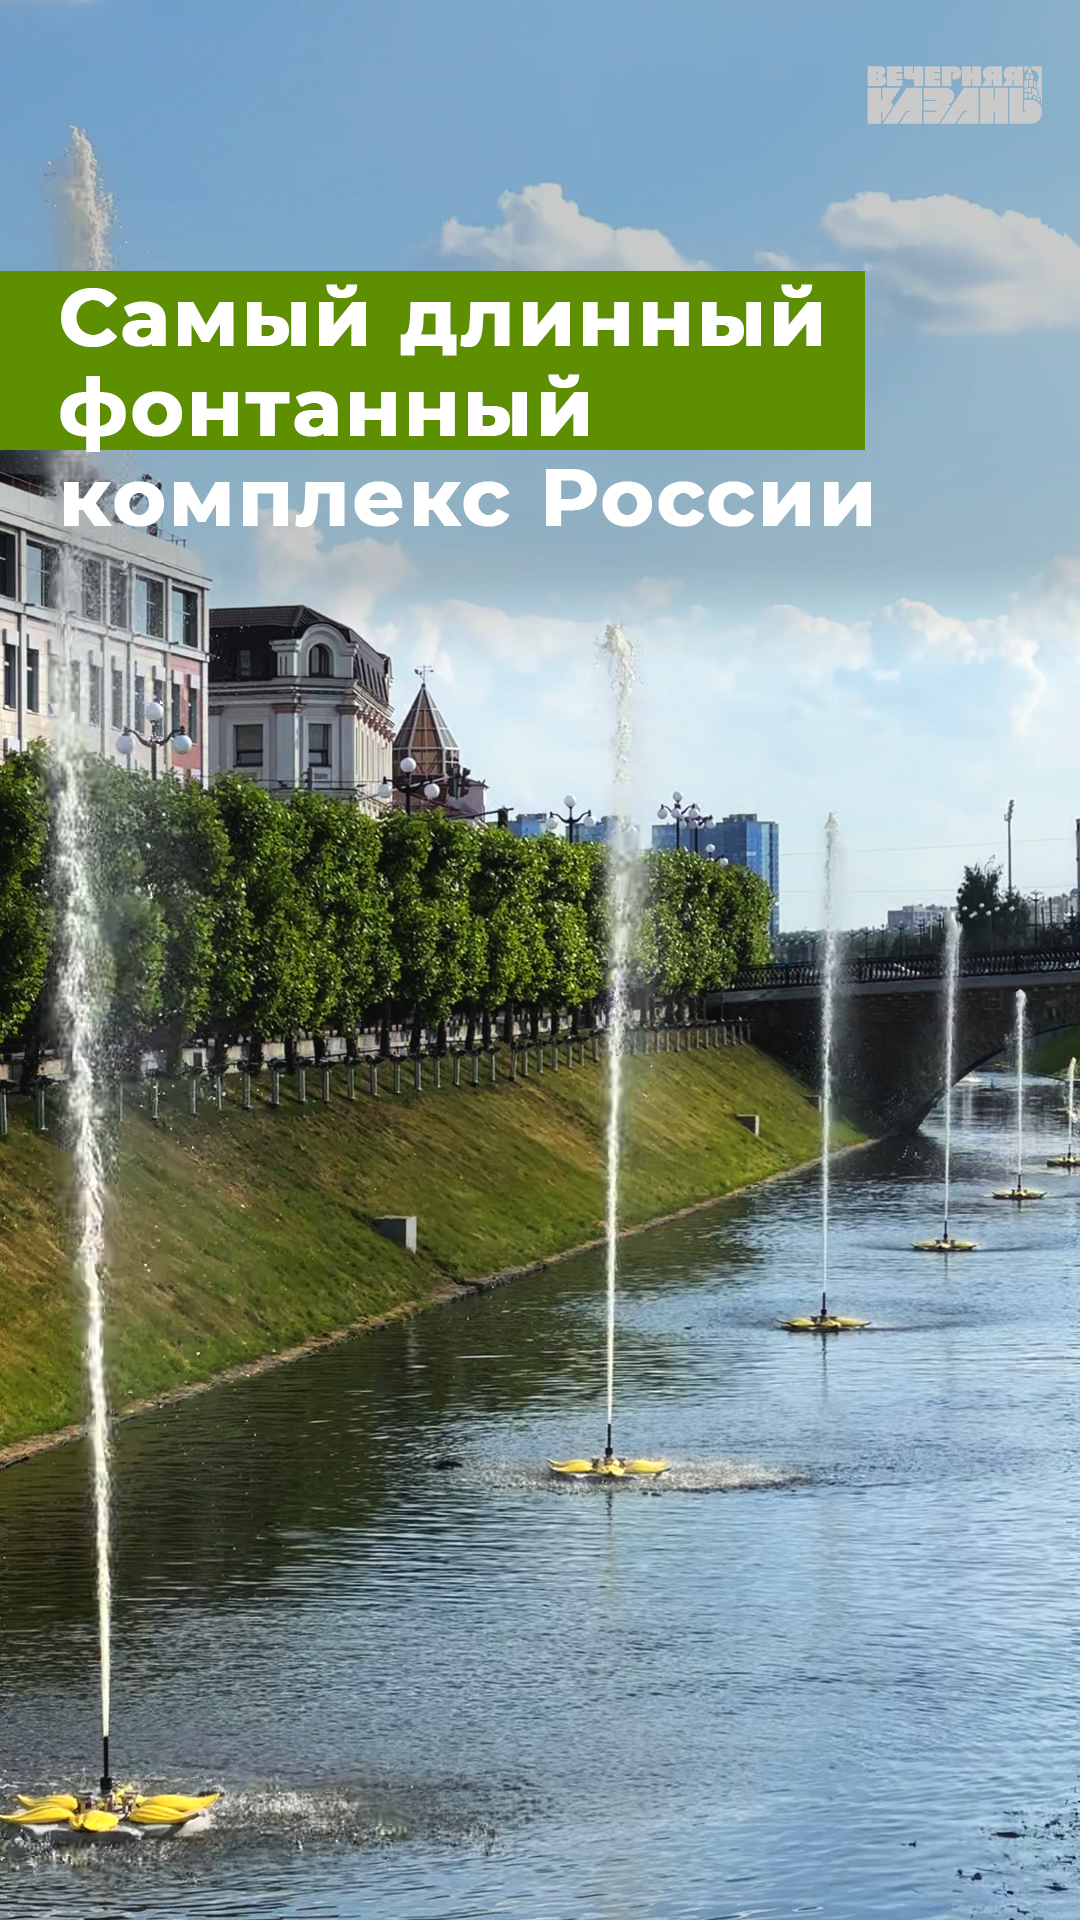 Самый длинный фонтанный комплекс России